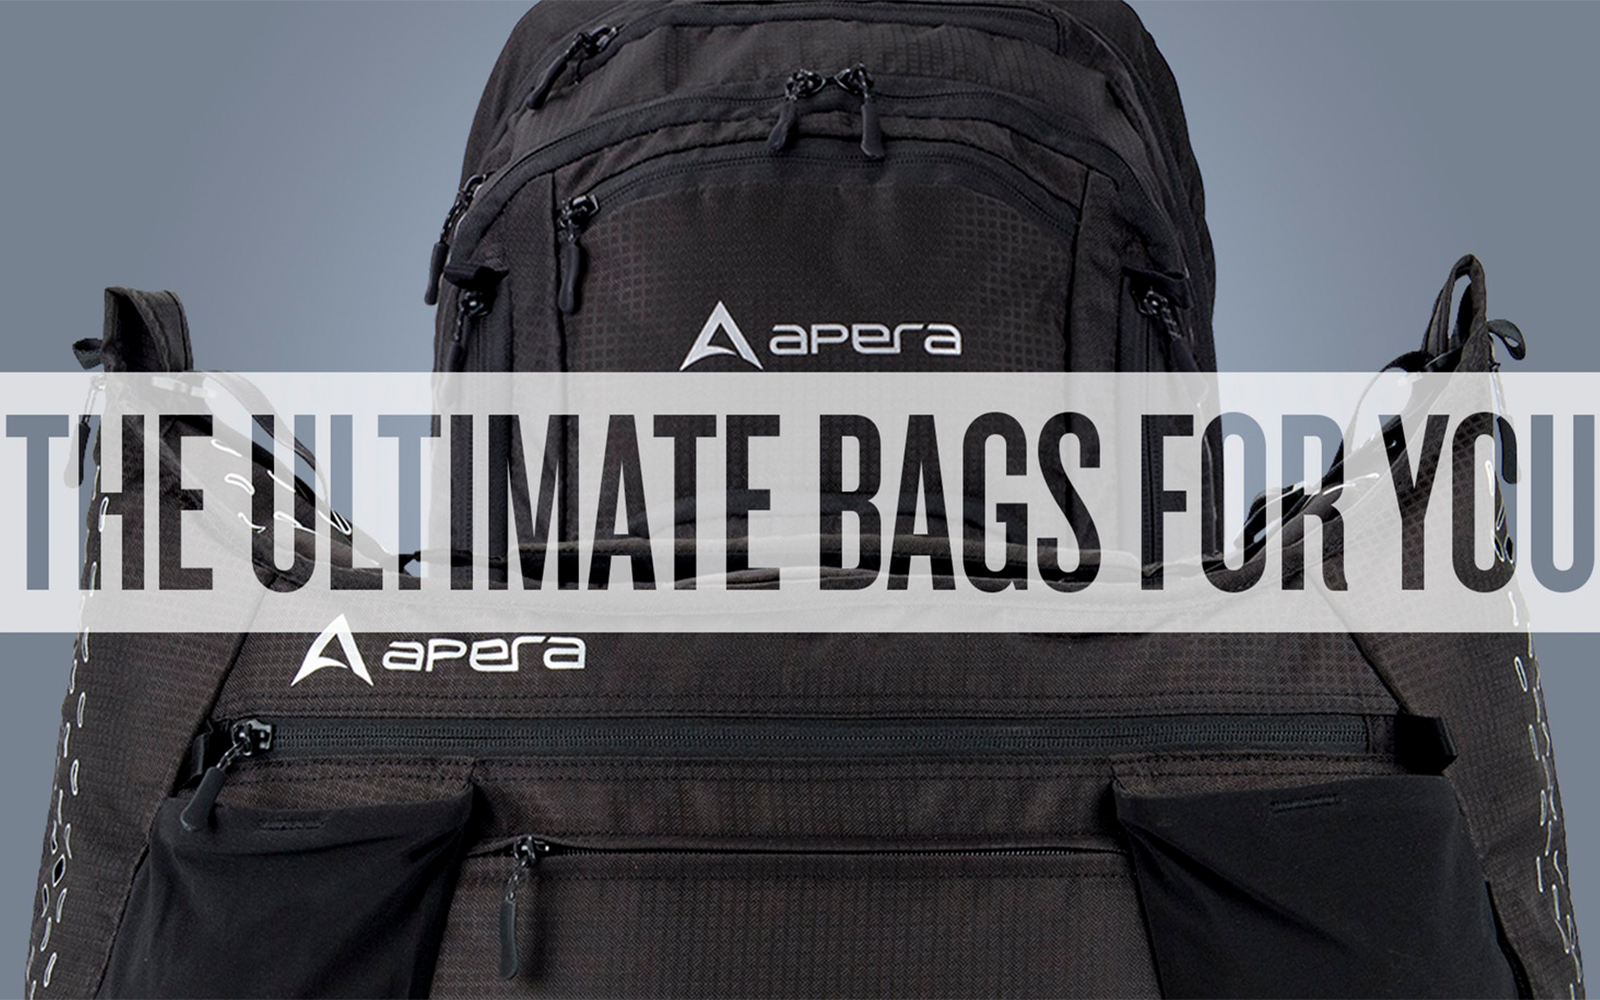 Apera Travel Bags